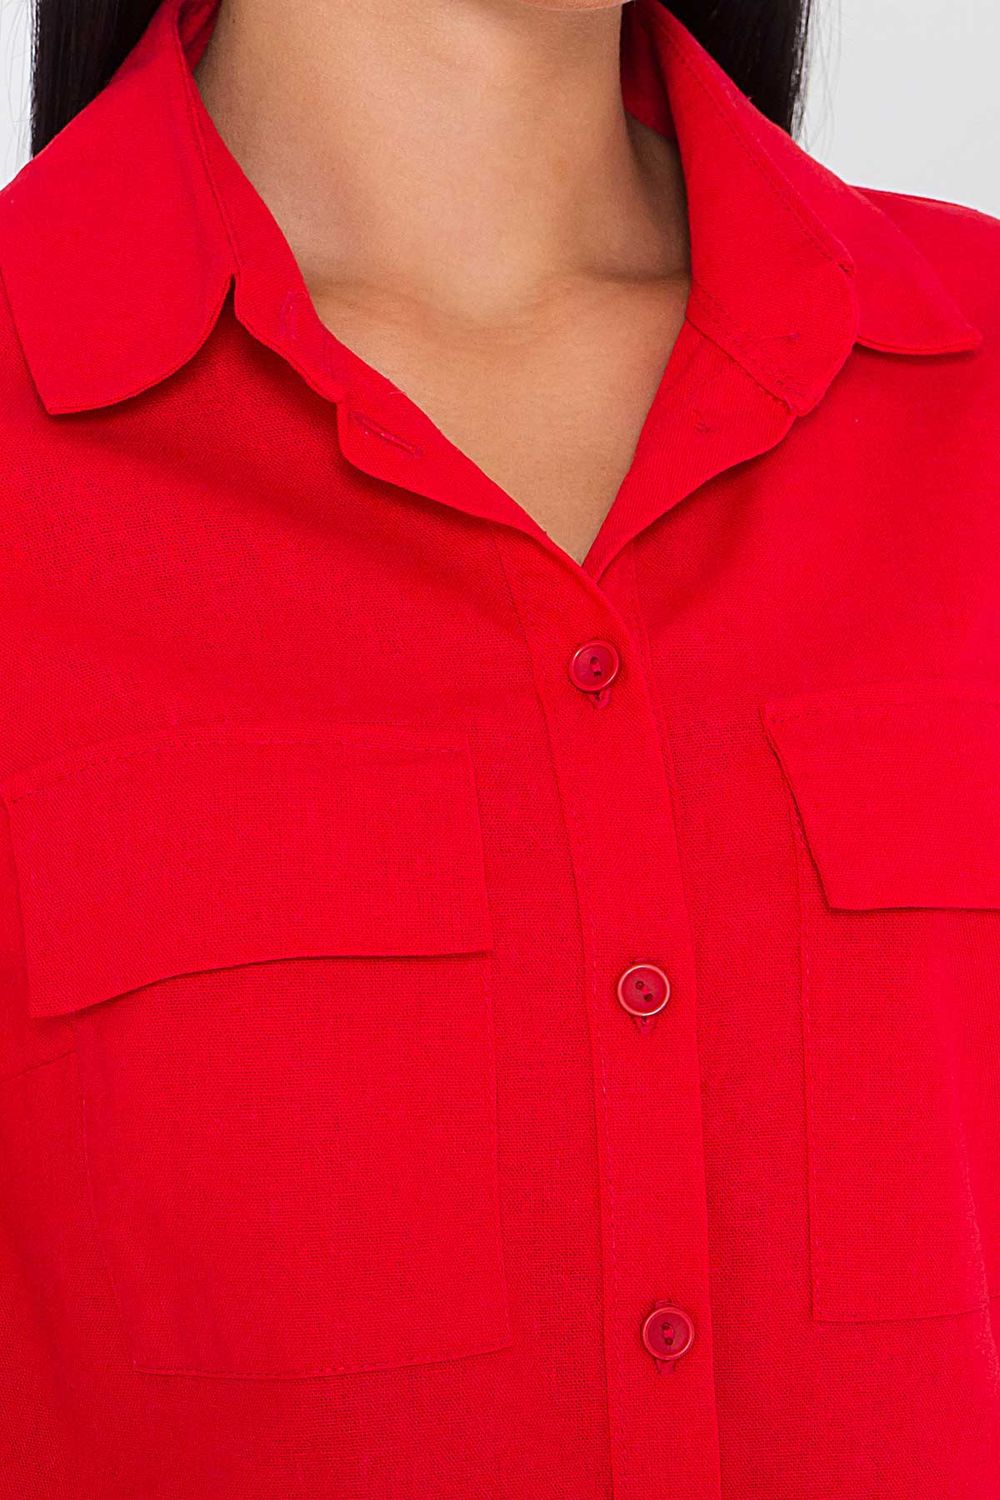 Женский летний костюм с шортами красного цвета - фото